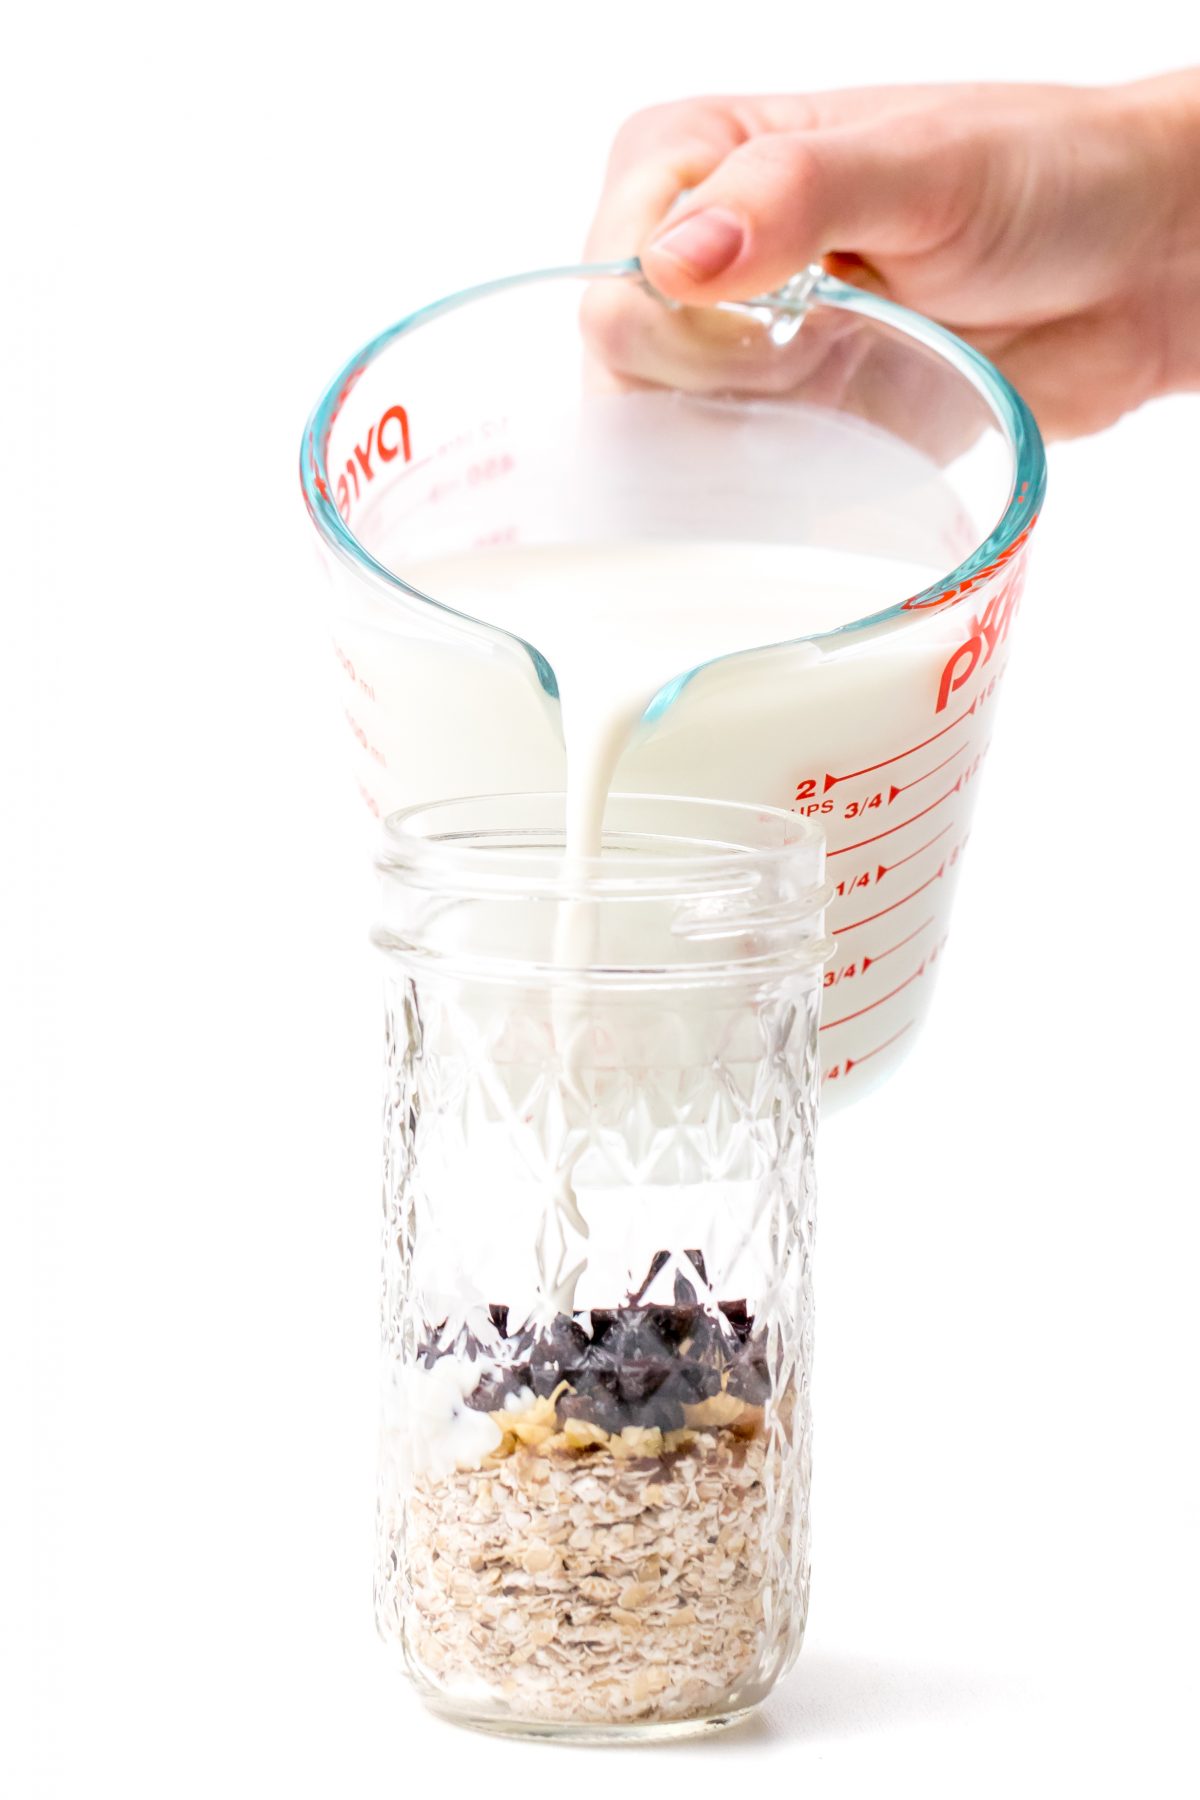 Pour milk into jars